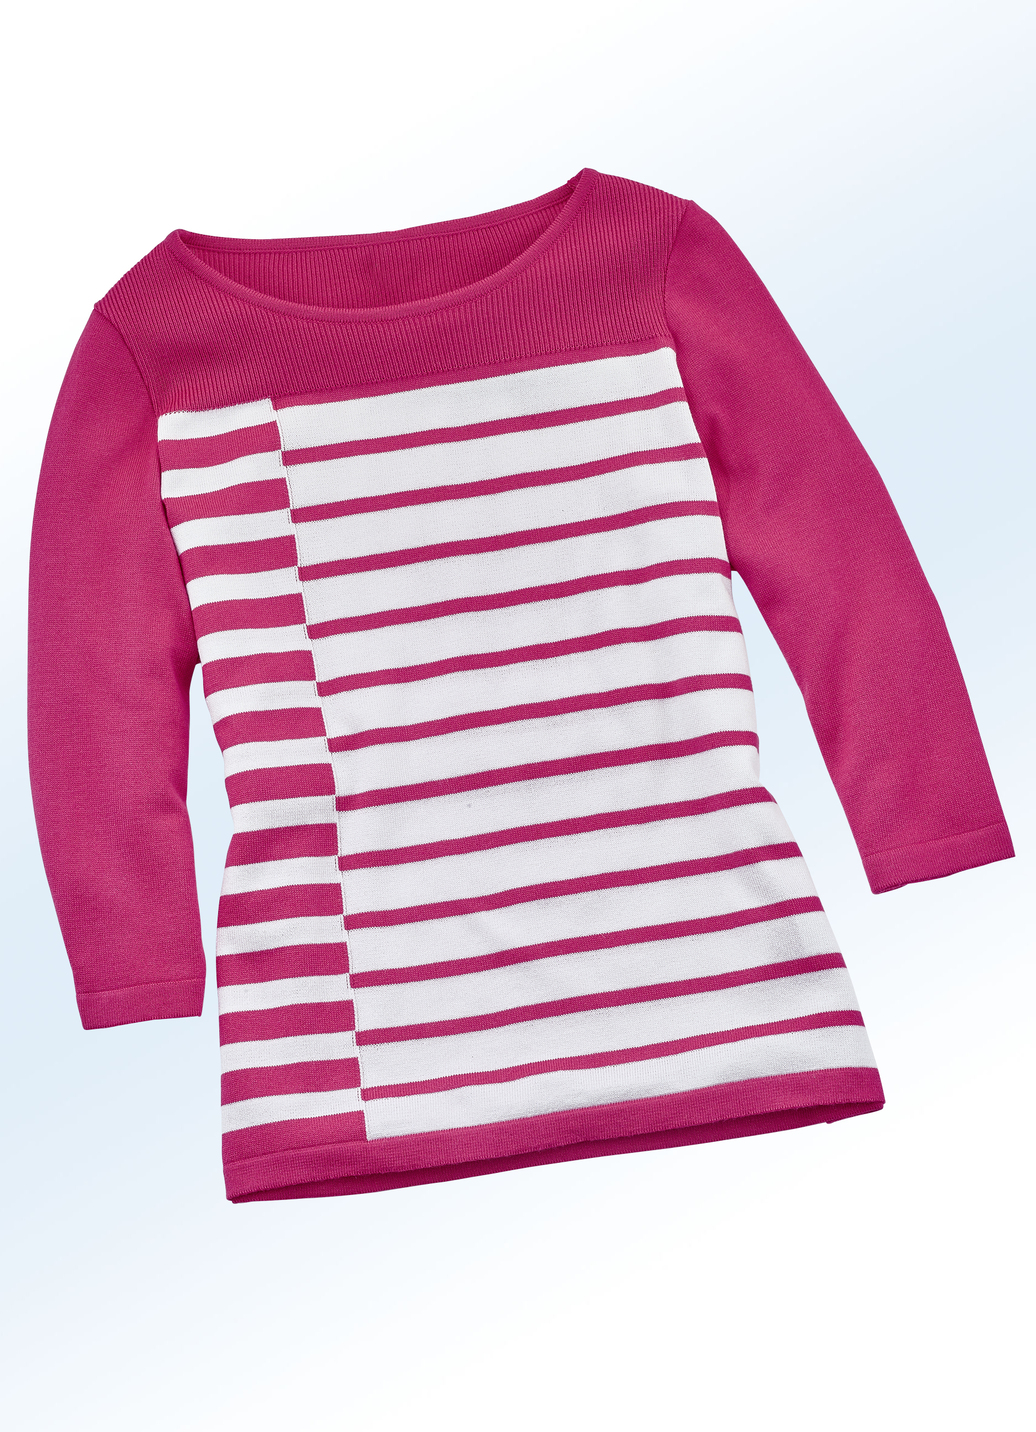 Pullover in hochwertiger Qualität mit Seide, Pink-Weiss, Größe 44 von BADER